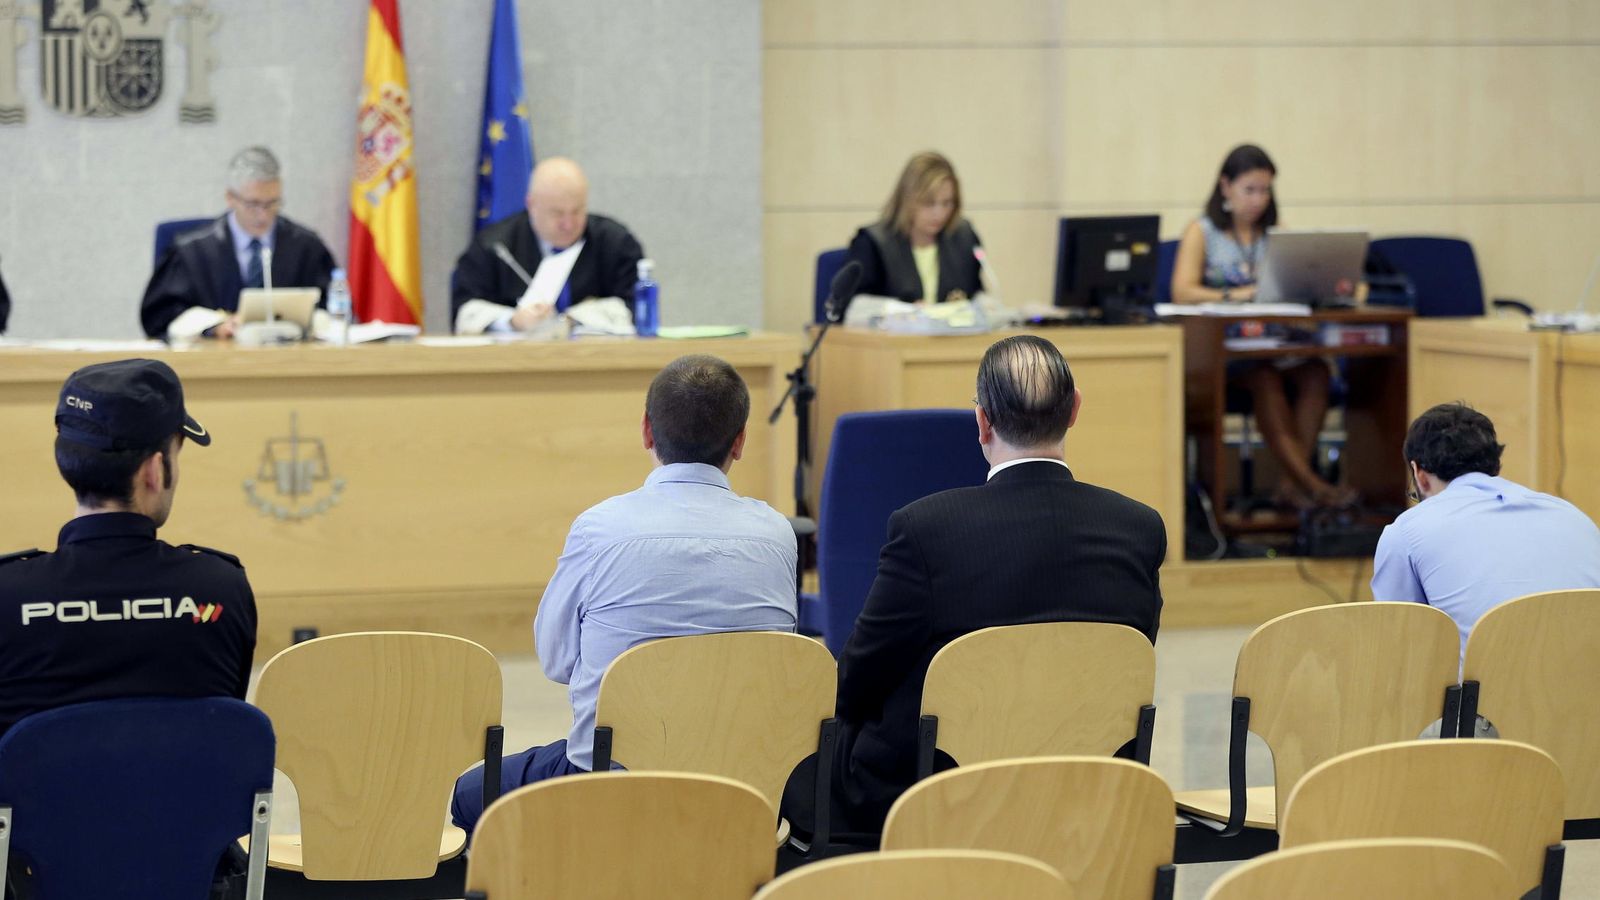 Foto: La Audiencia juzga a tres miembros de Falange y Tradición por los delitos de amenazas y daños terroristas en pueblos de Navarra en 2009. (EFE)